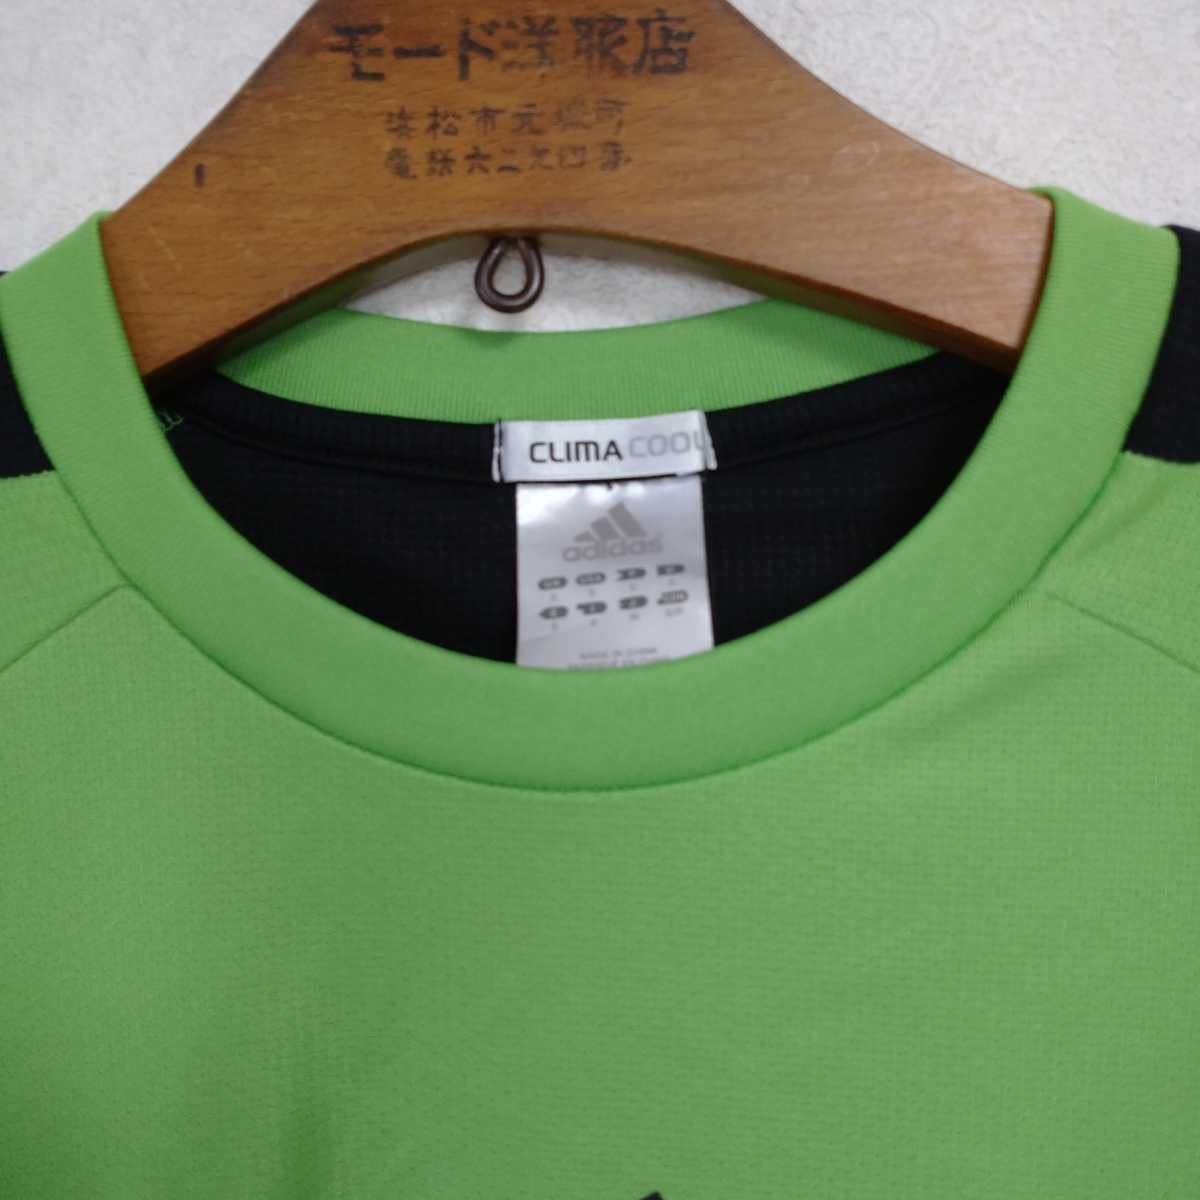 アディダス Climacool ランニング Tシャツ 緑 M